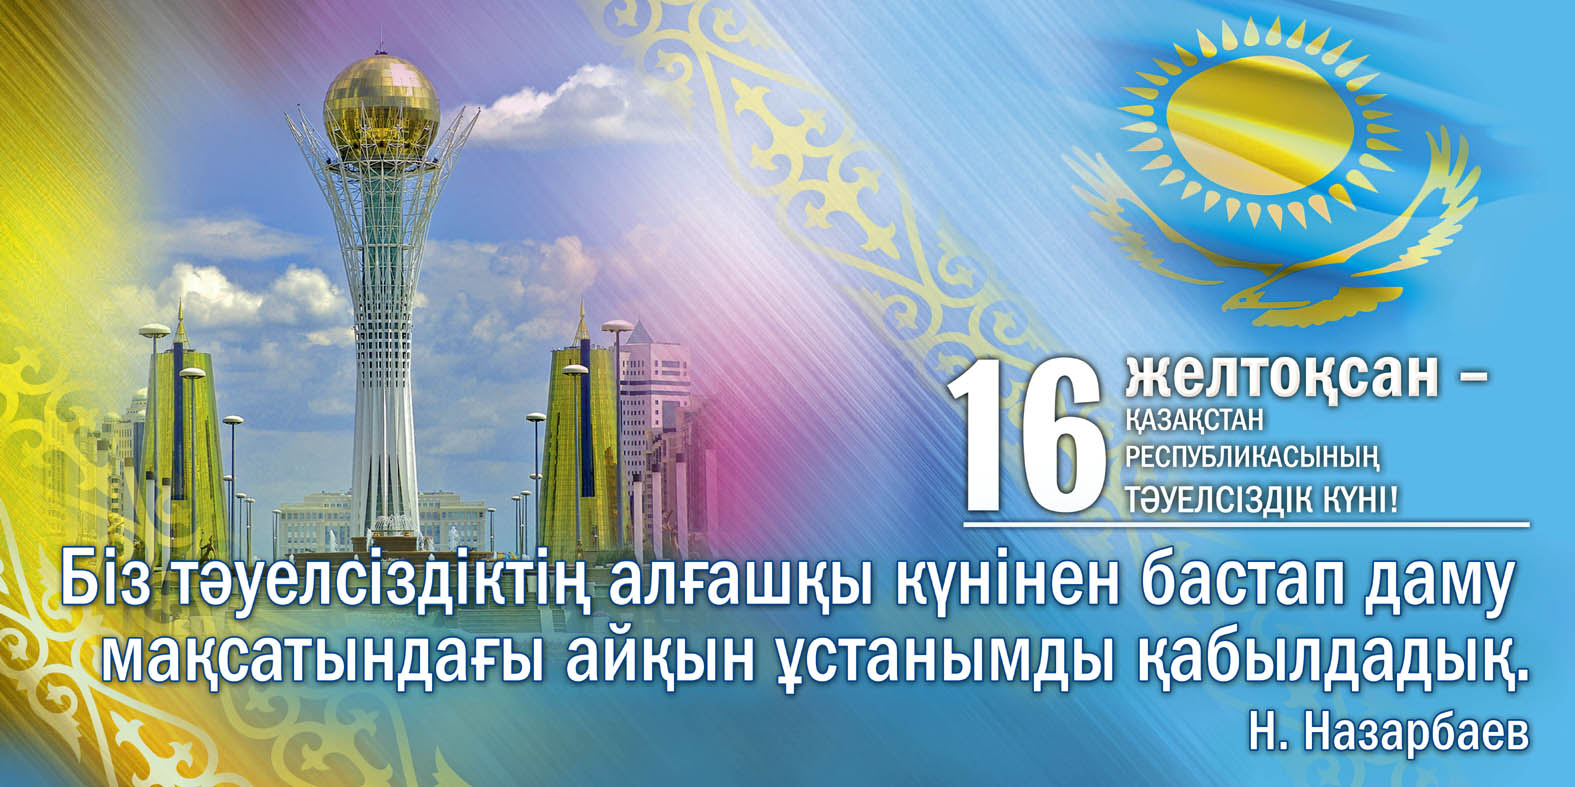 Курсовые Работы По Экономике На Казахском Языке